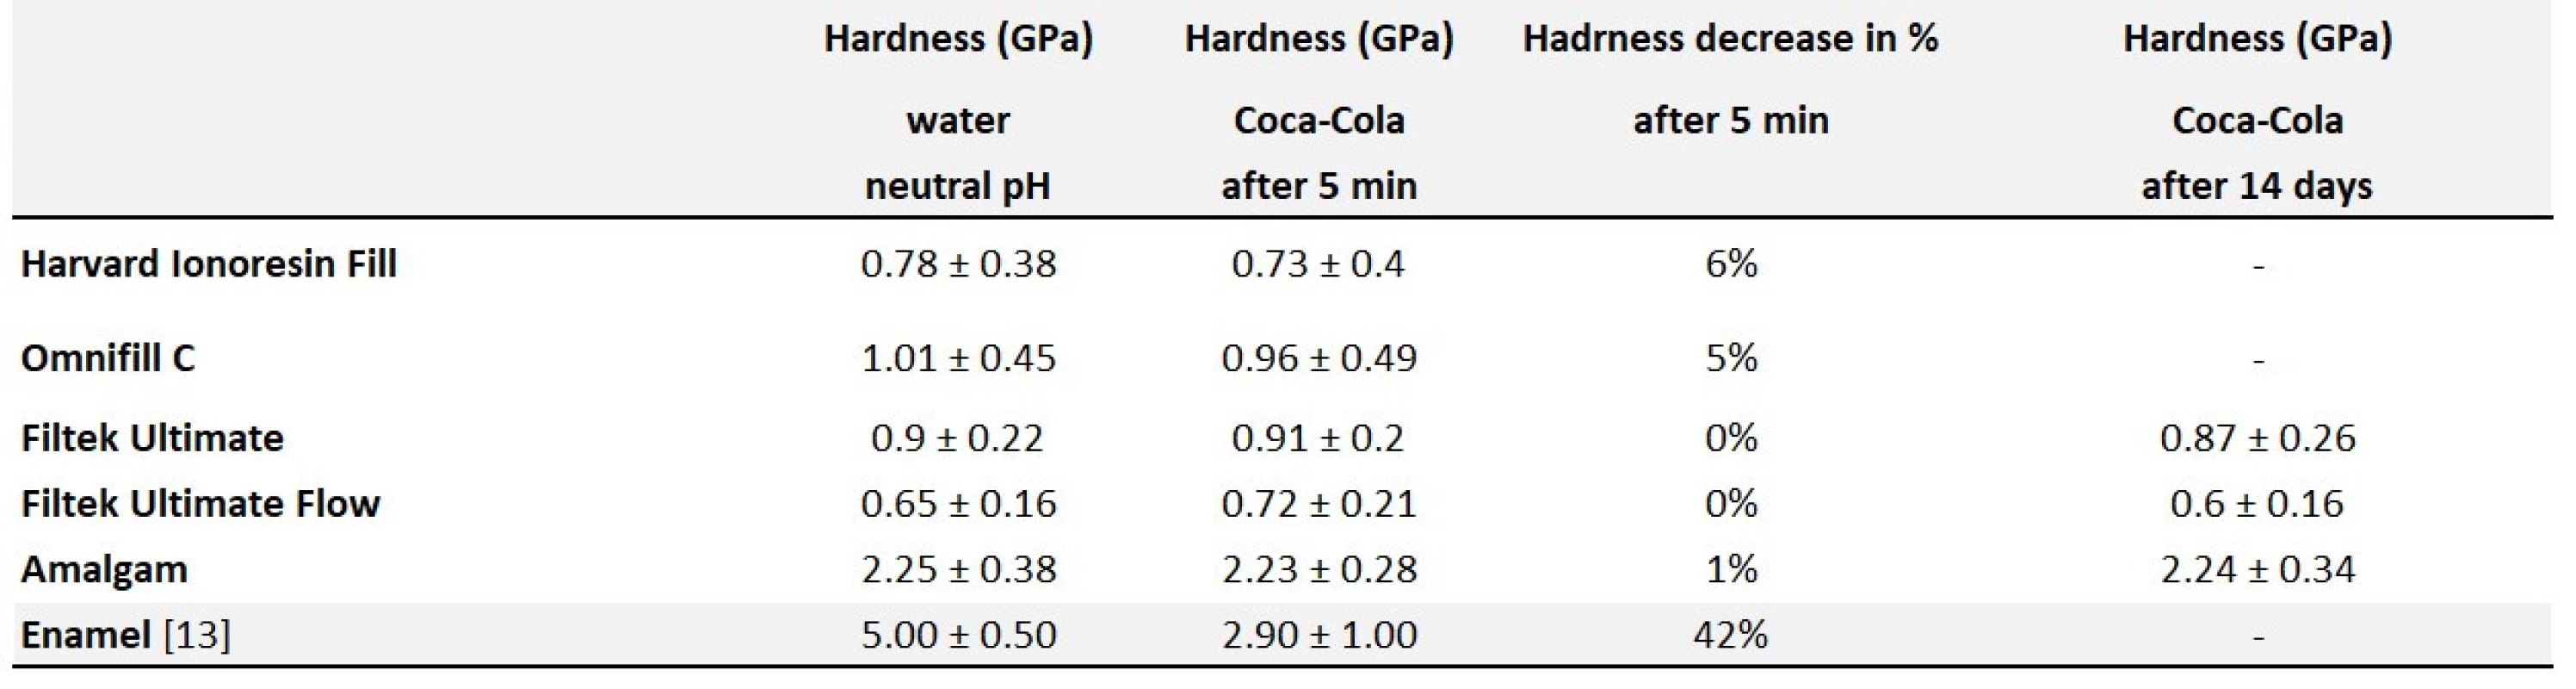 Hardness measurement by nanoindentation – summary